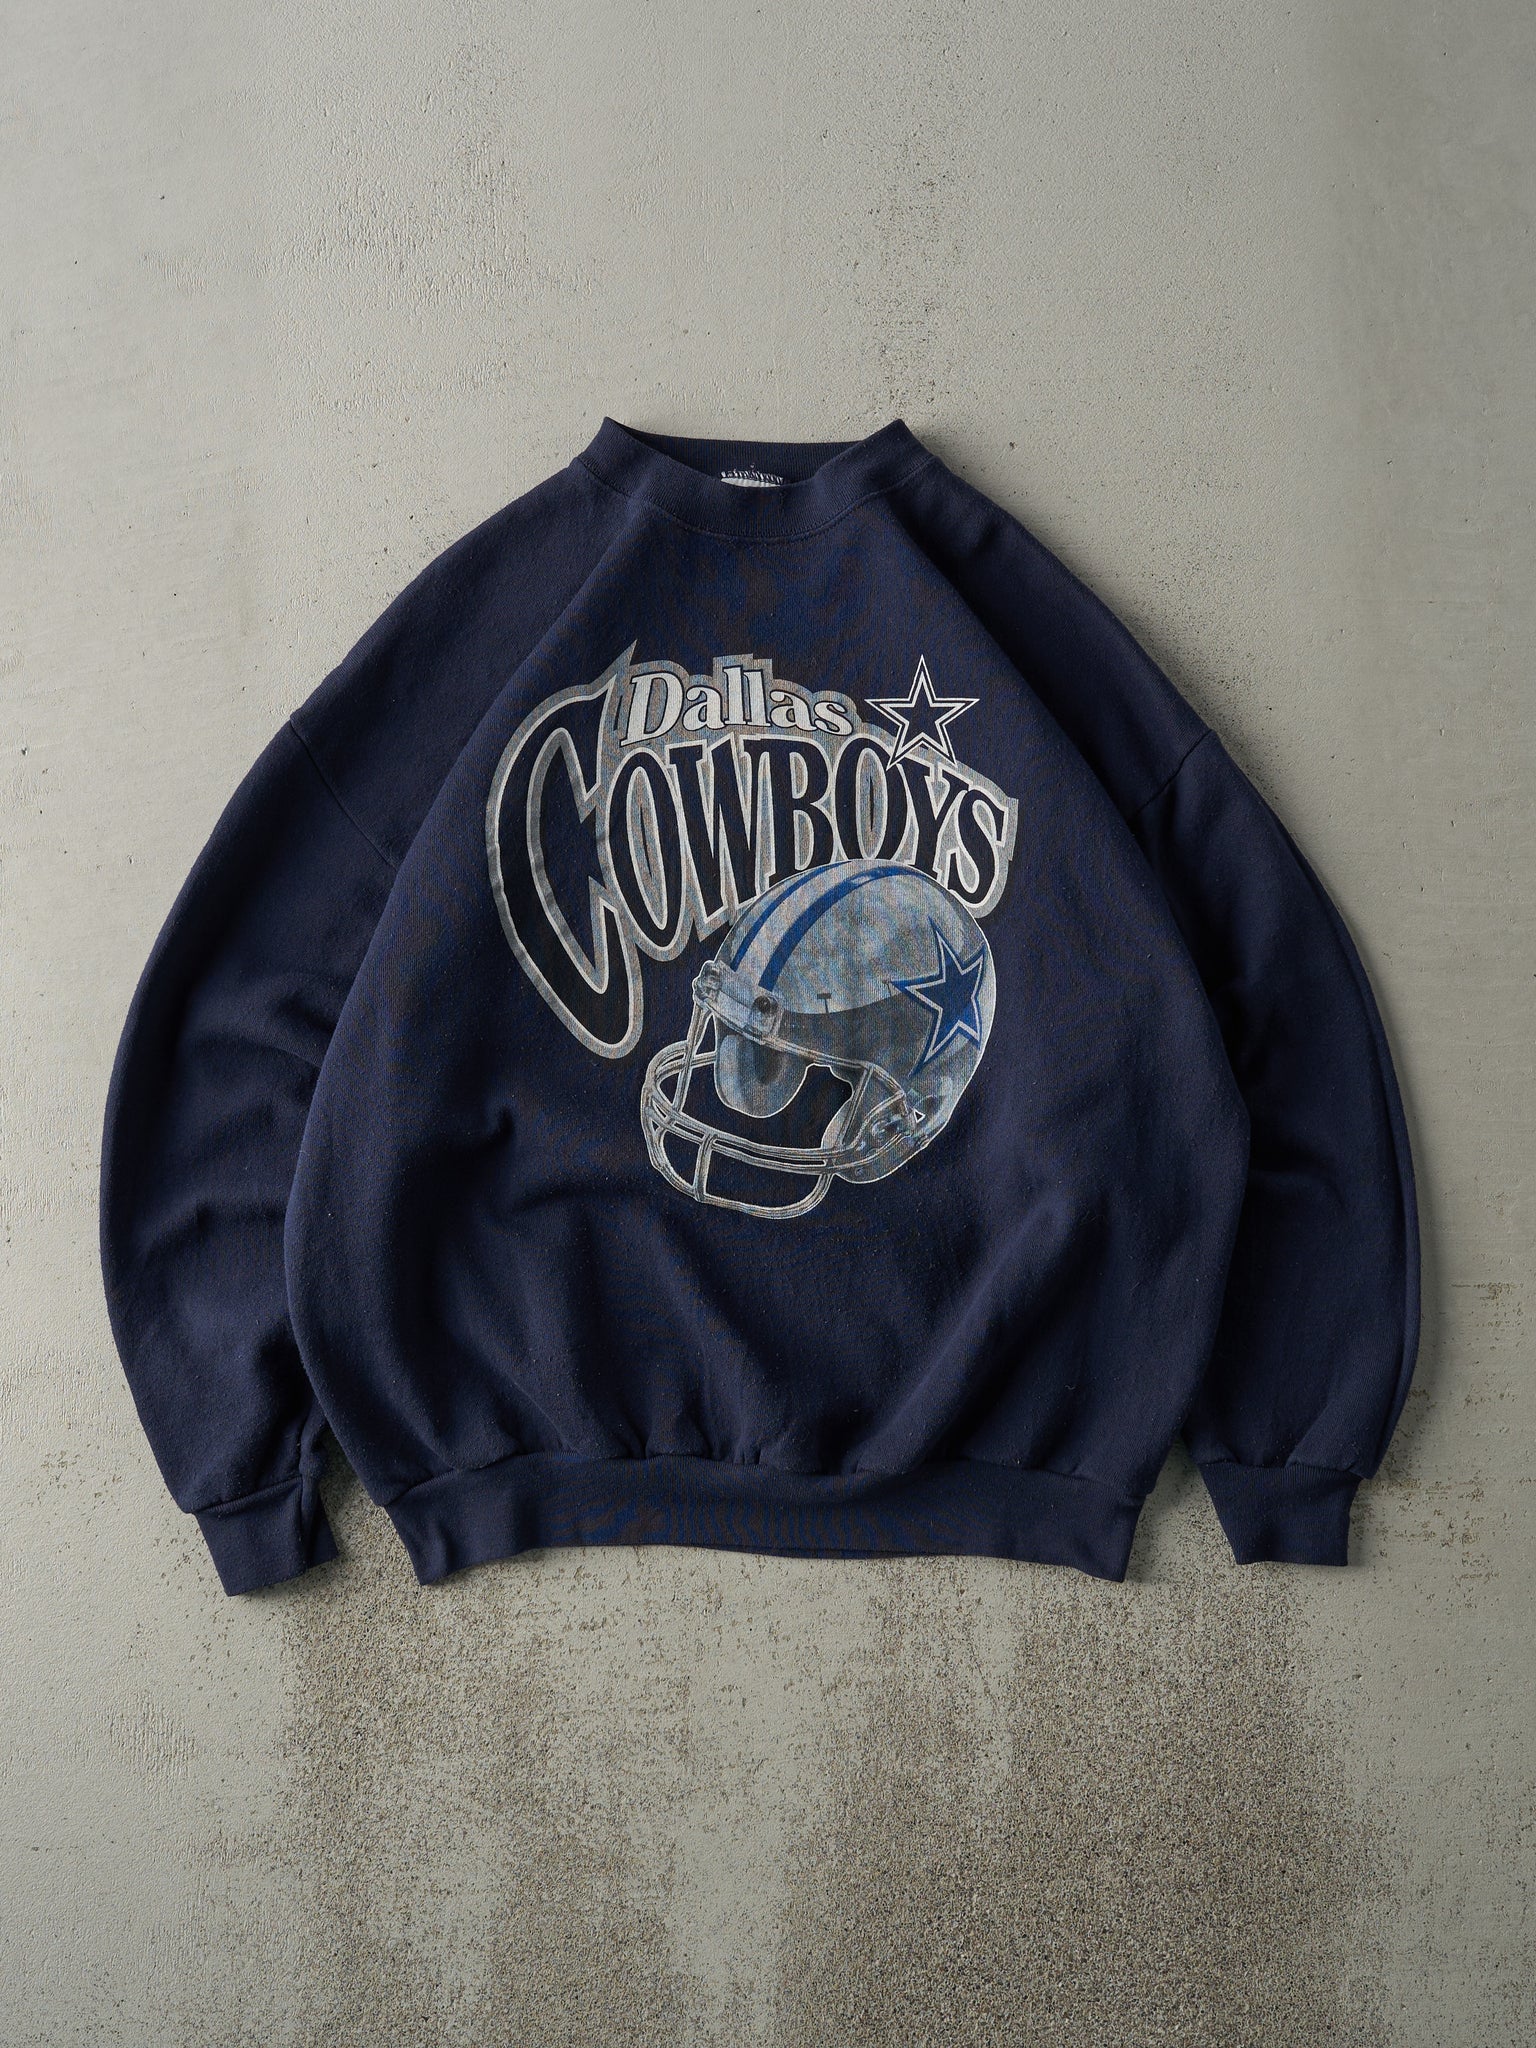 Vintage 90s Navy Blue Dallas Cowboys Crewneck (L)